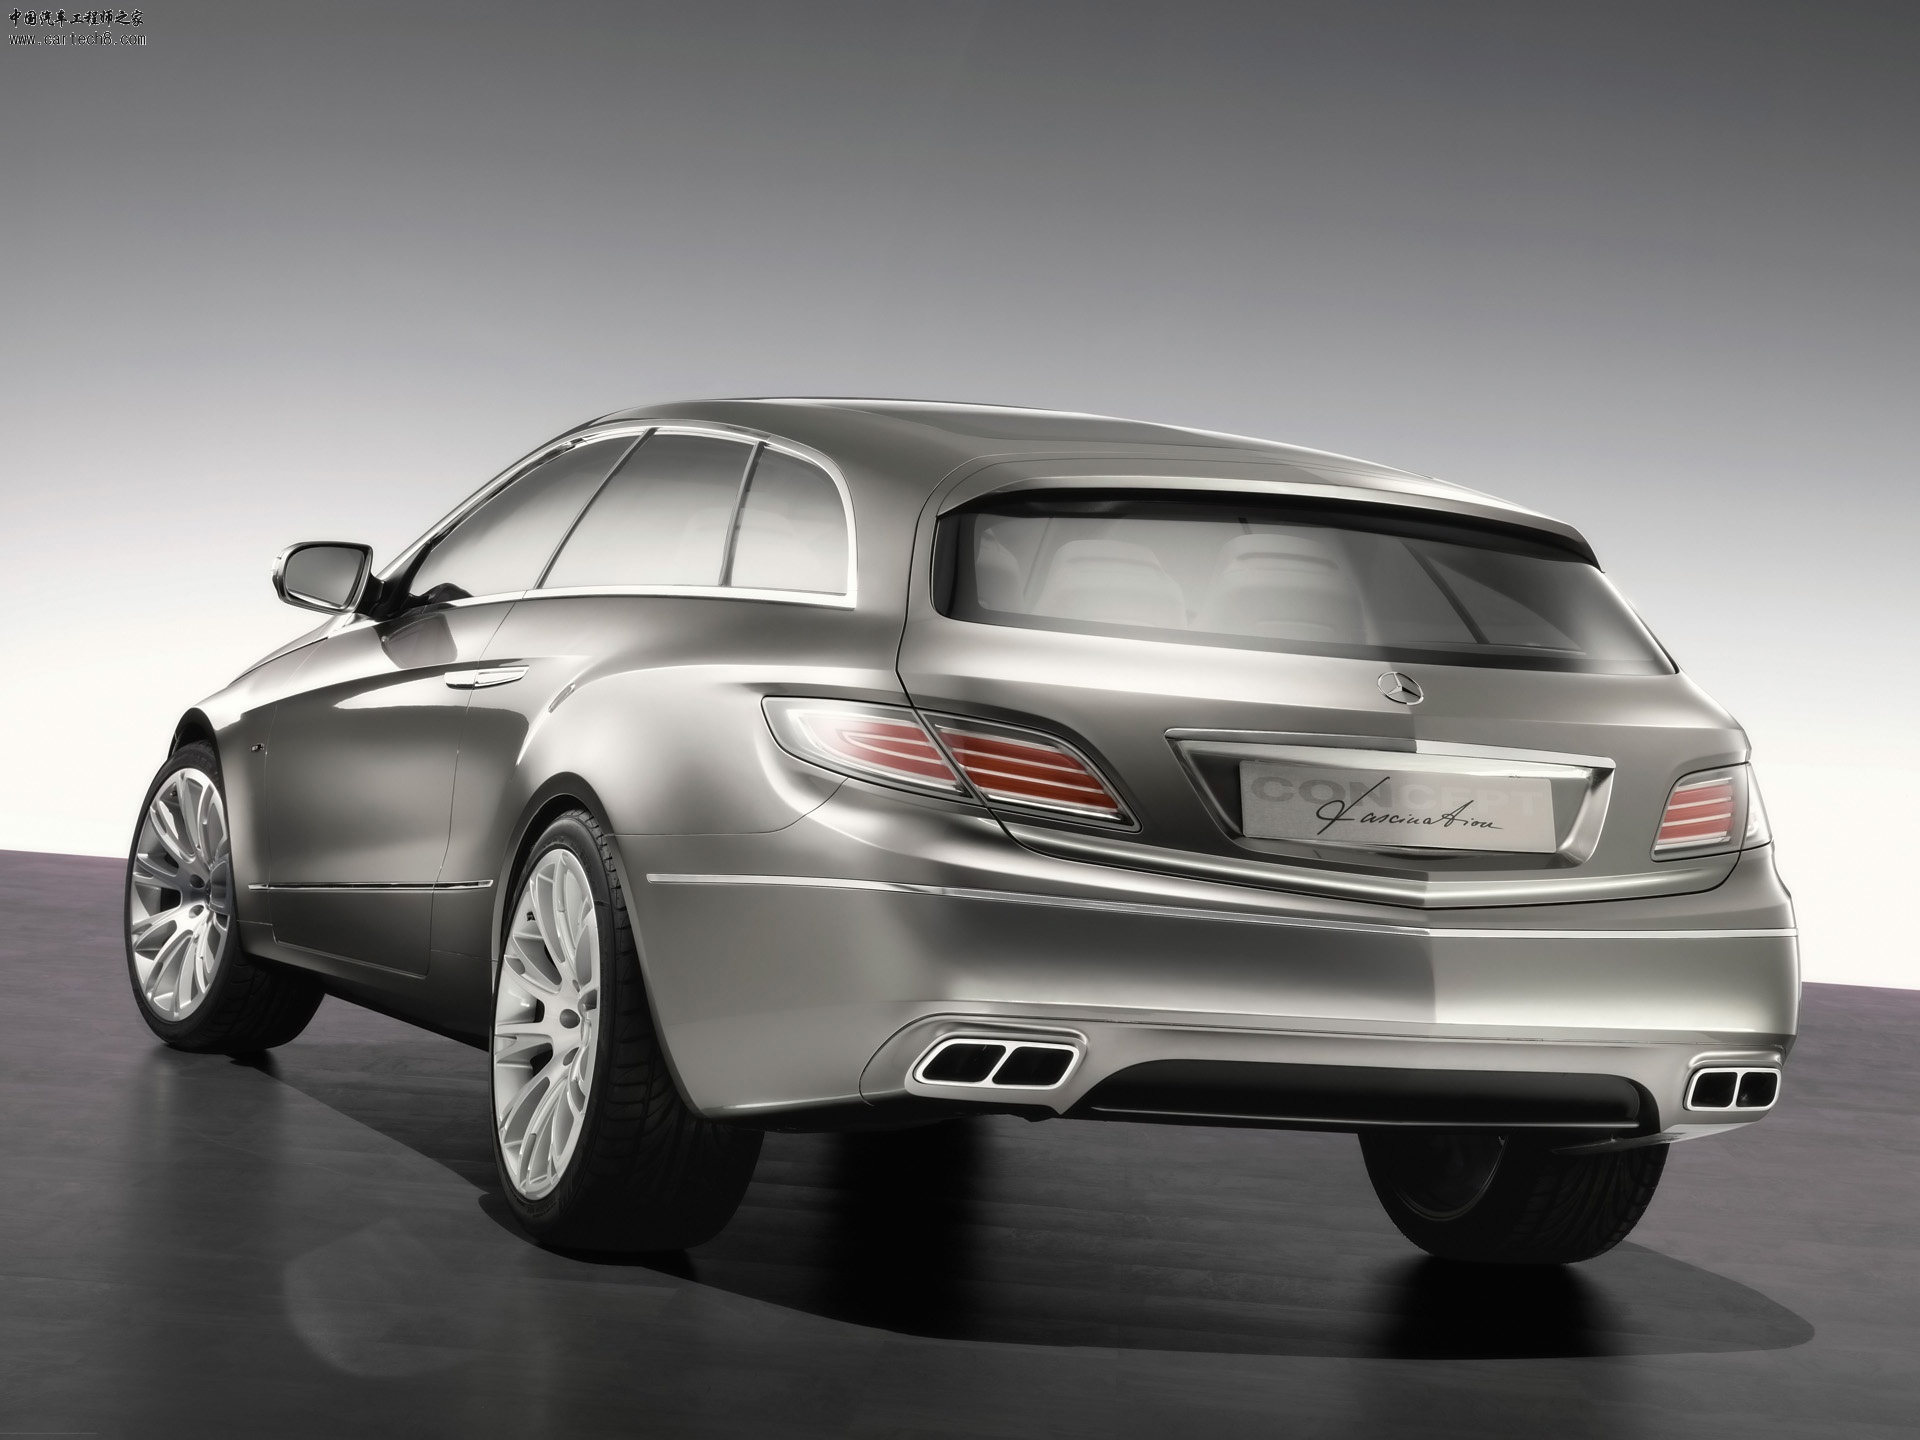 2008-Mercedes-Benz-ConceptFASCINATION-Rear-Angle-1920x1440.jpg